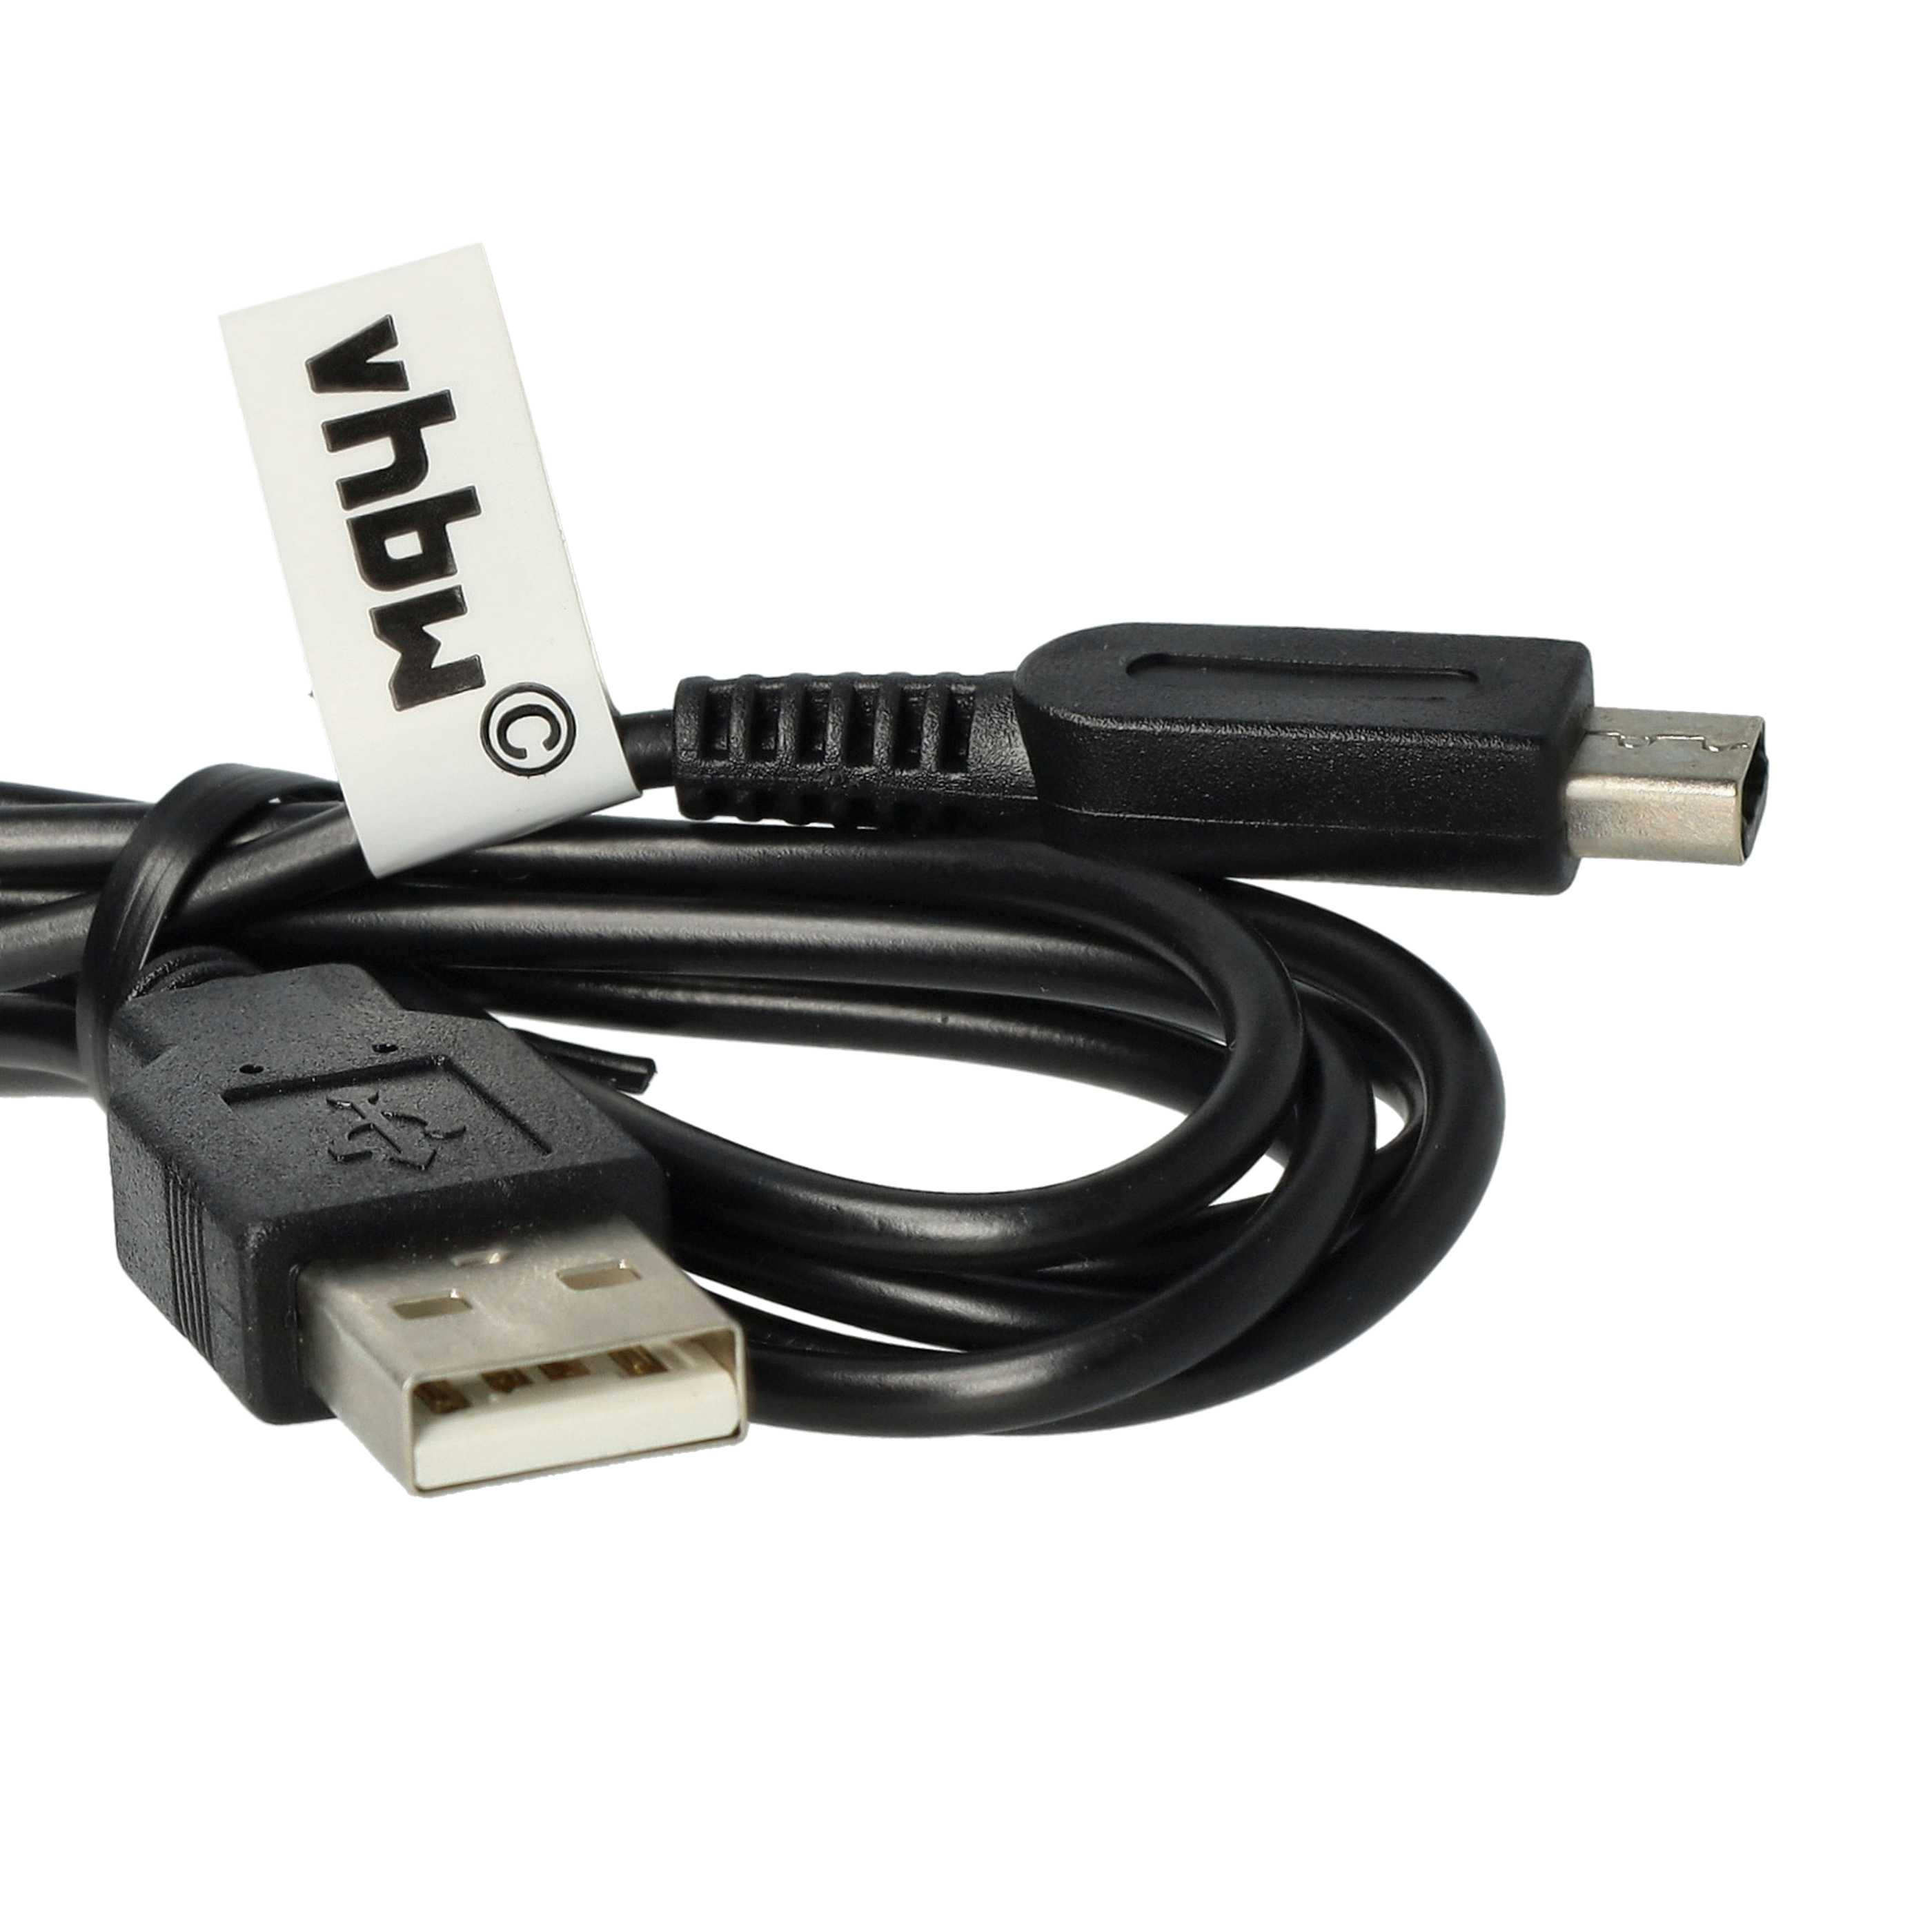 vhbw Cable USB consola - cable de conexión 1,2m